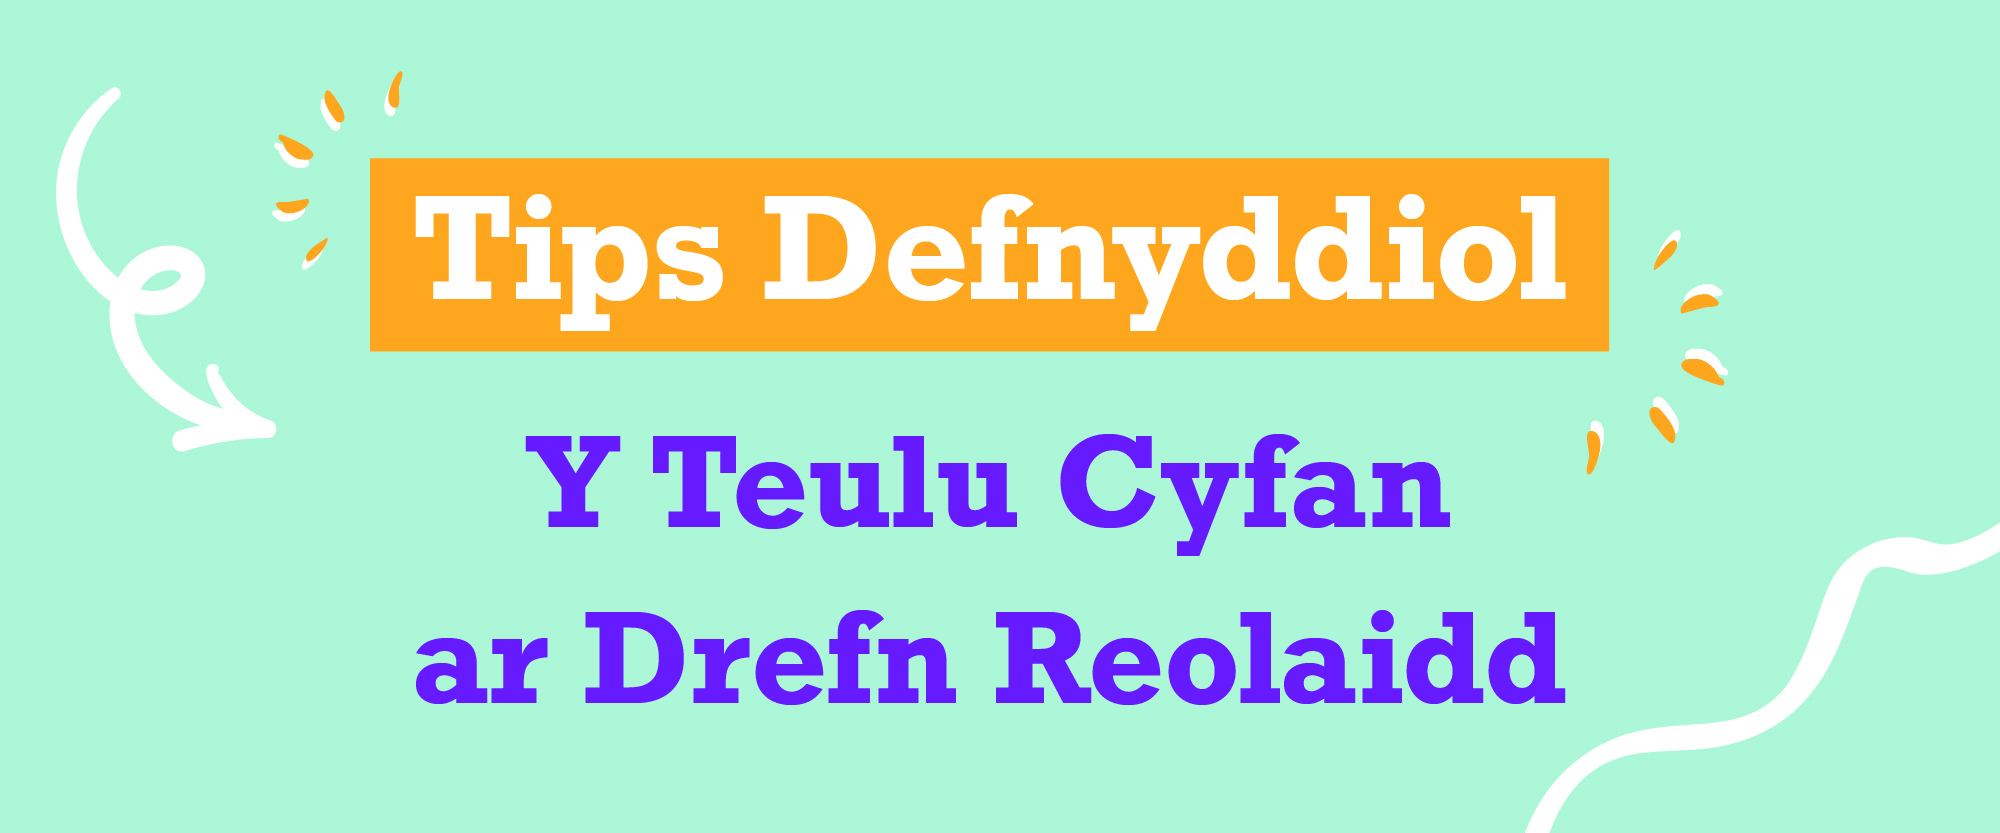  Tips Defnyddiol Y Teulu Cyfan ar Drefn Reolaidd